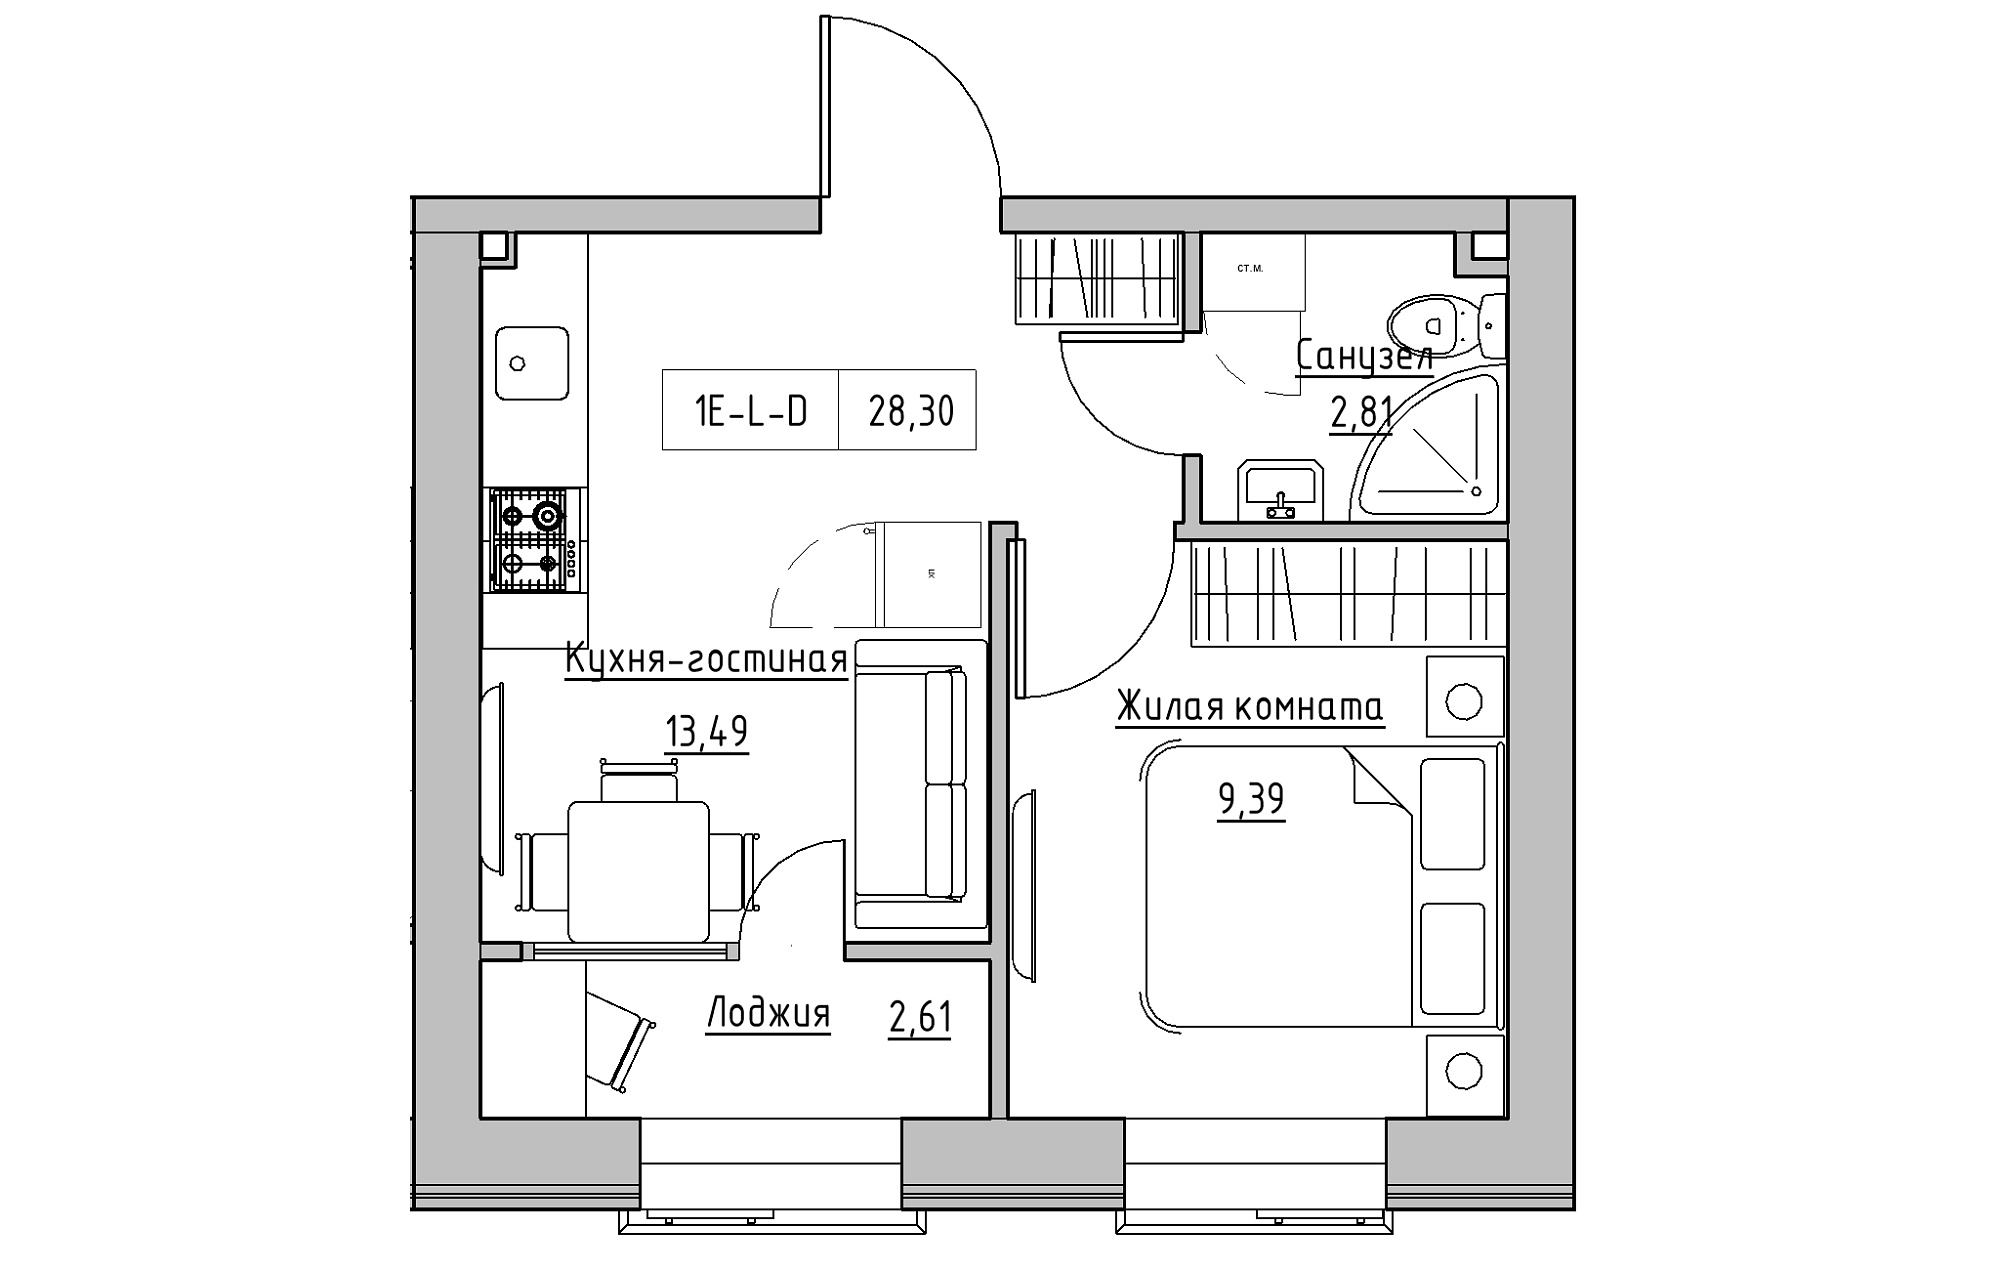 Планировка 1-к квартира площей 28.3м2, KS-018-02/0001.